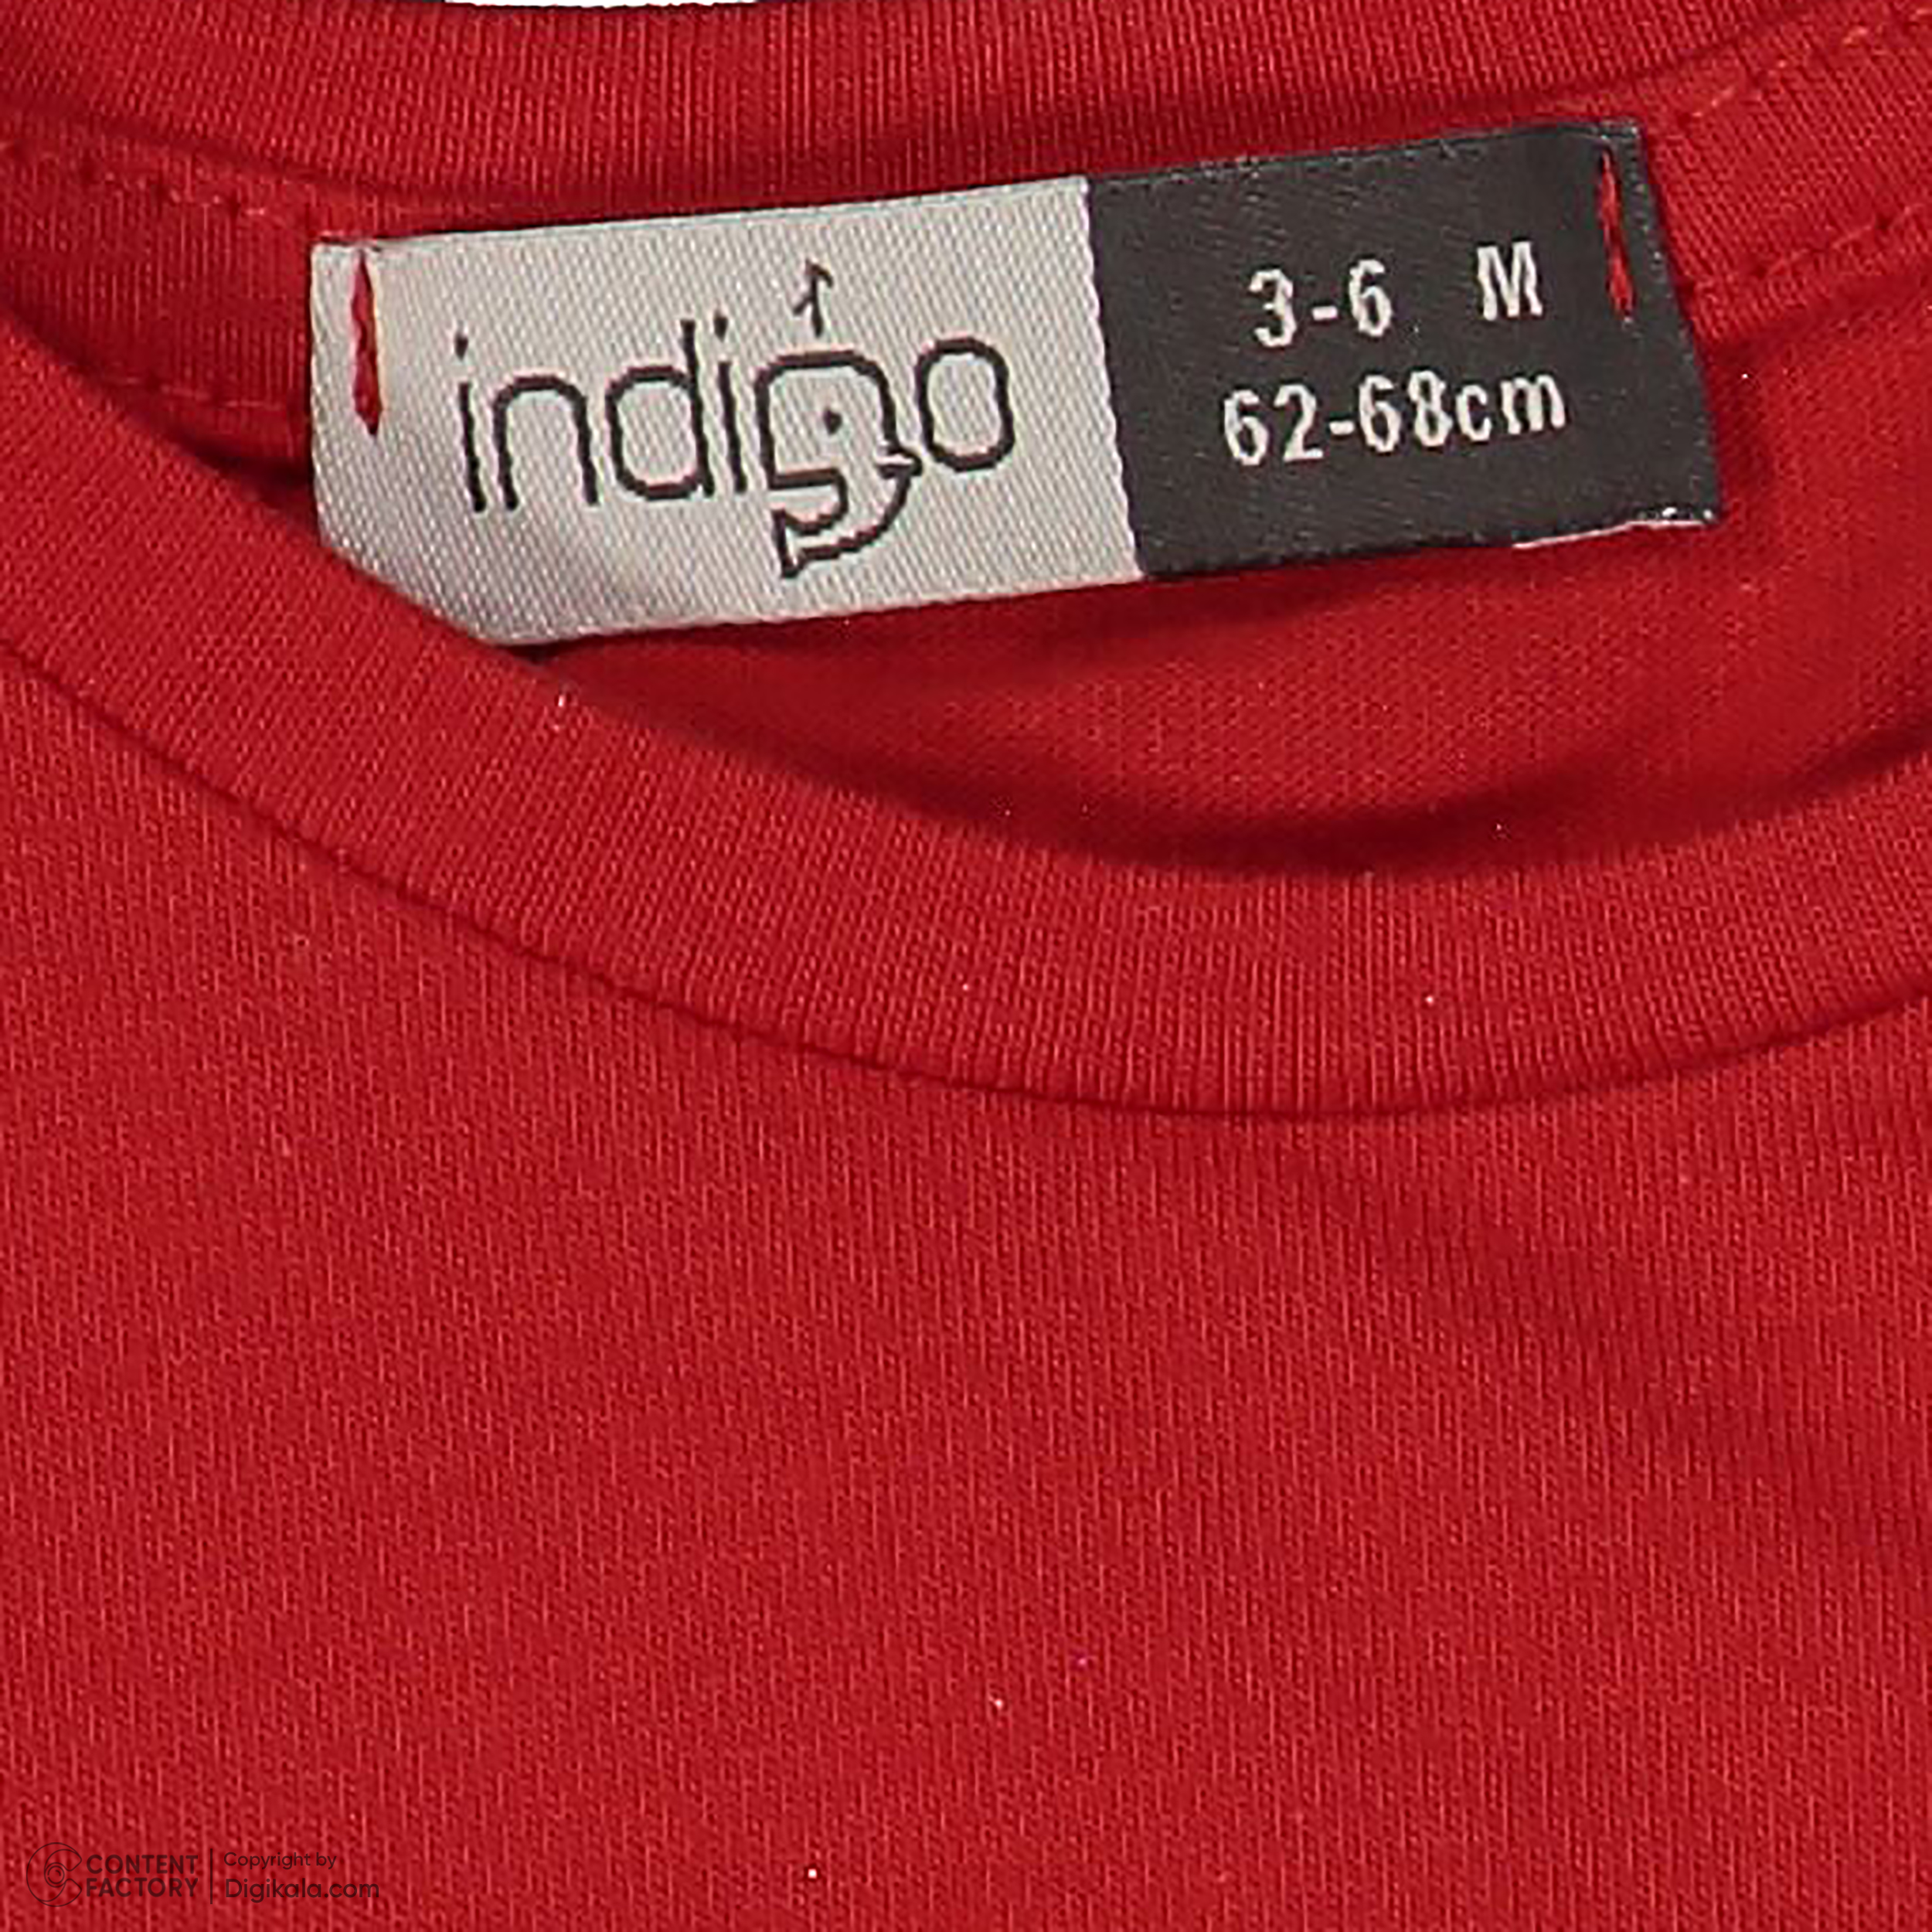 ست تی شرت و شلوارک نوزادی ایندیگو مدل 13216 رنگ قرمز -  - 9